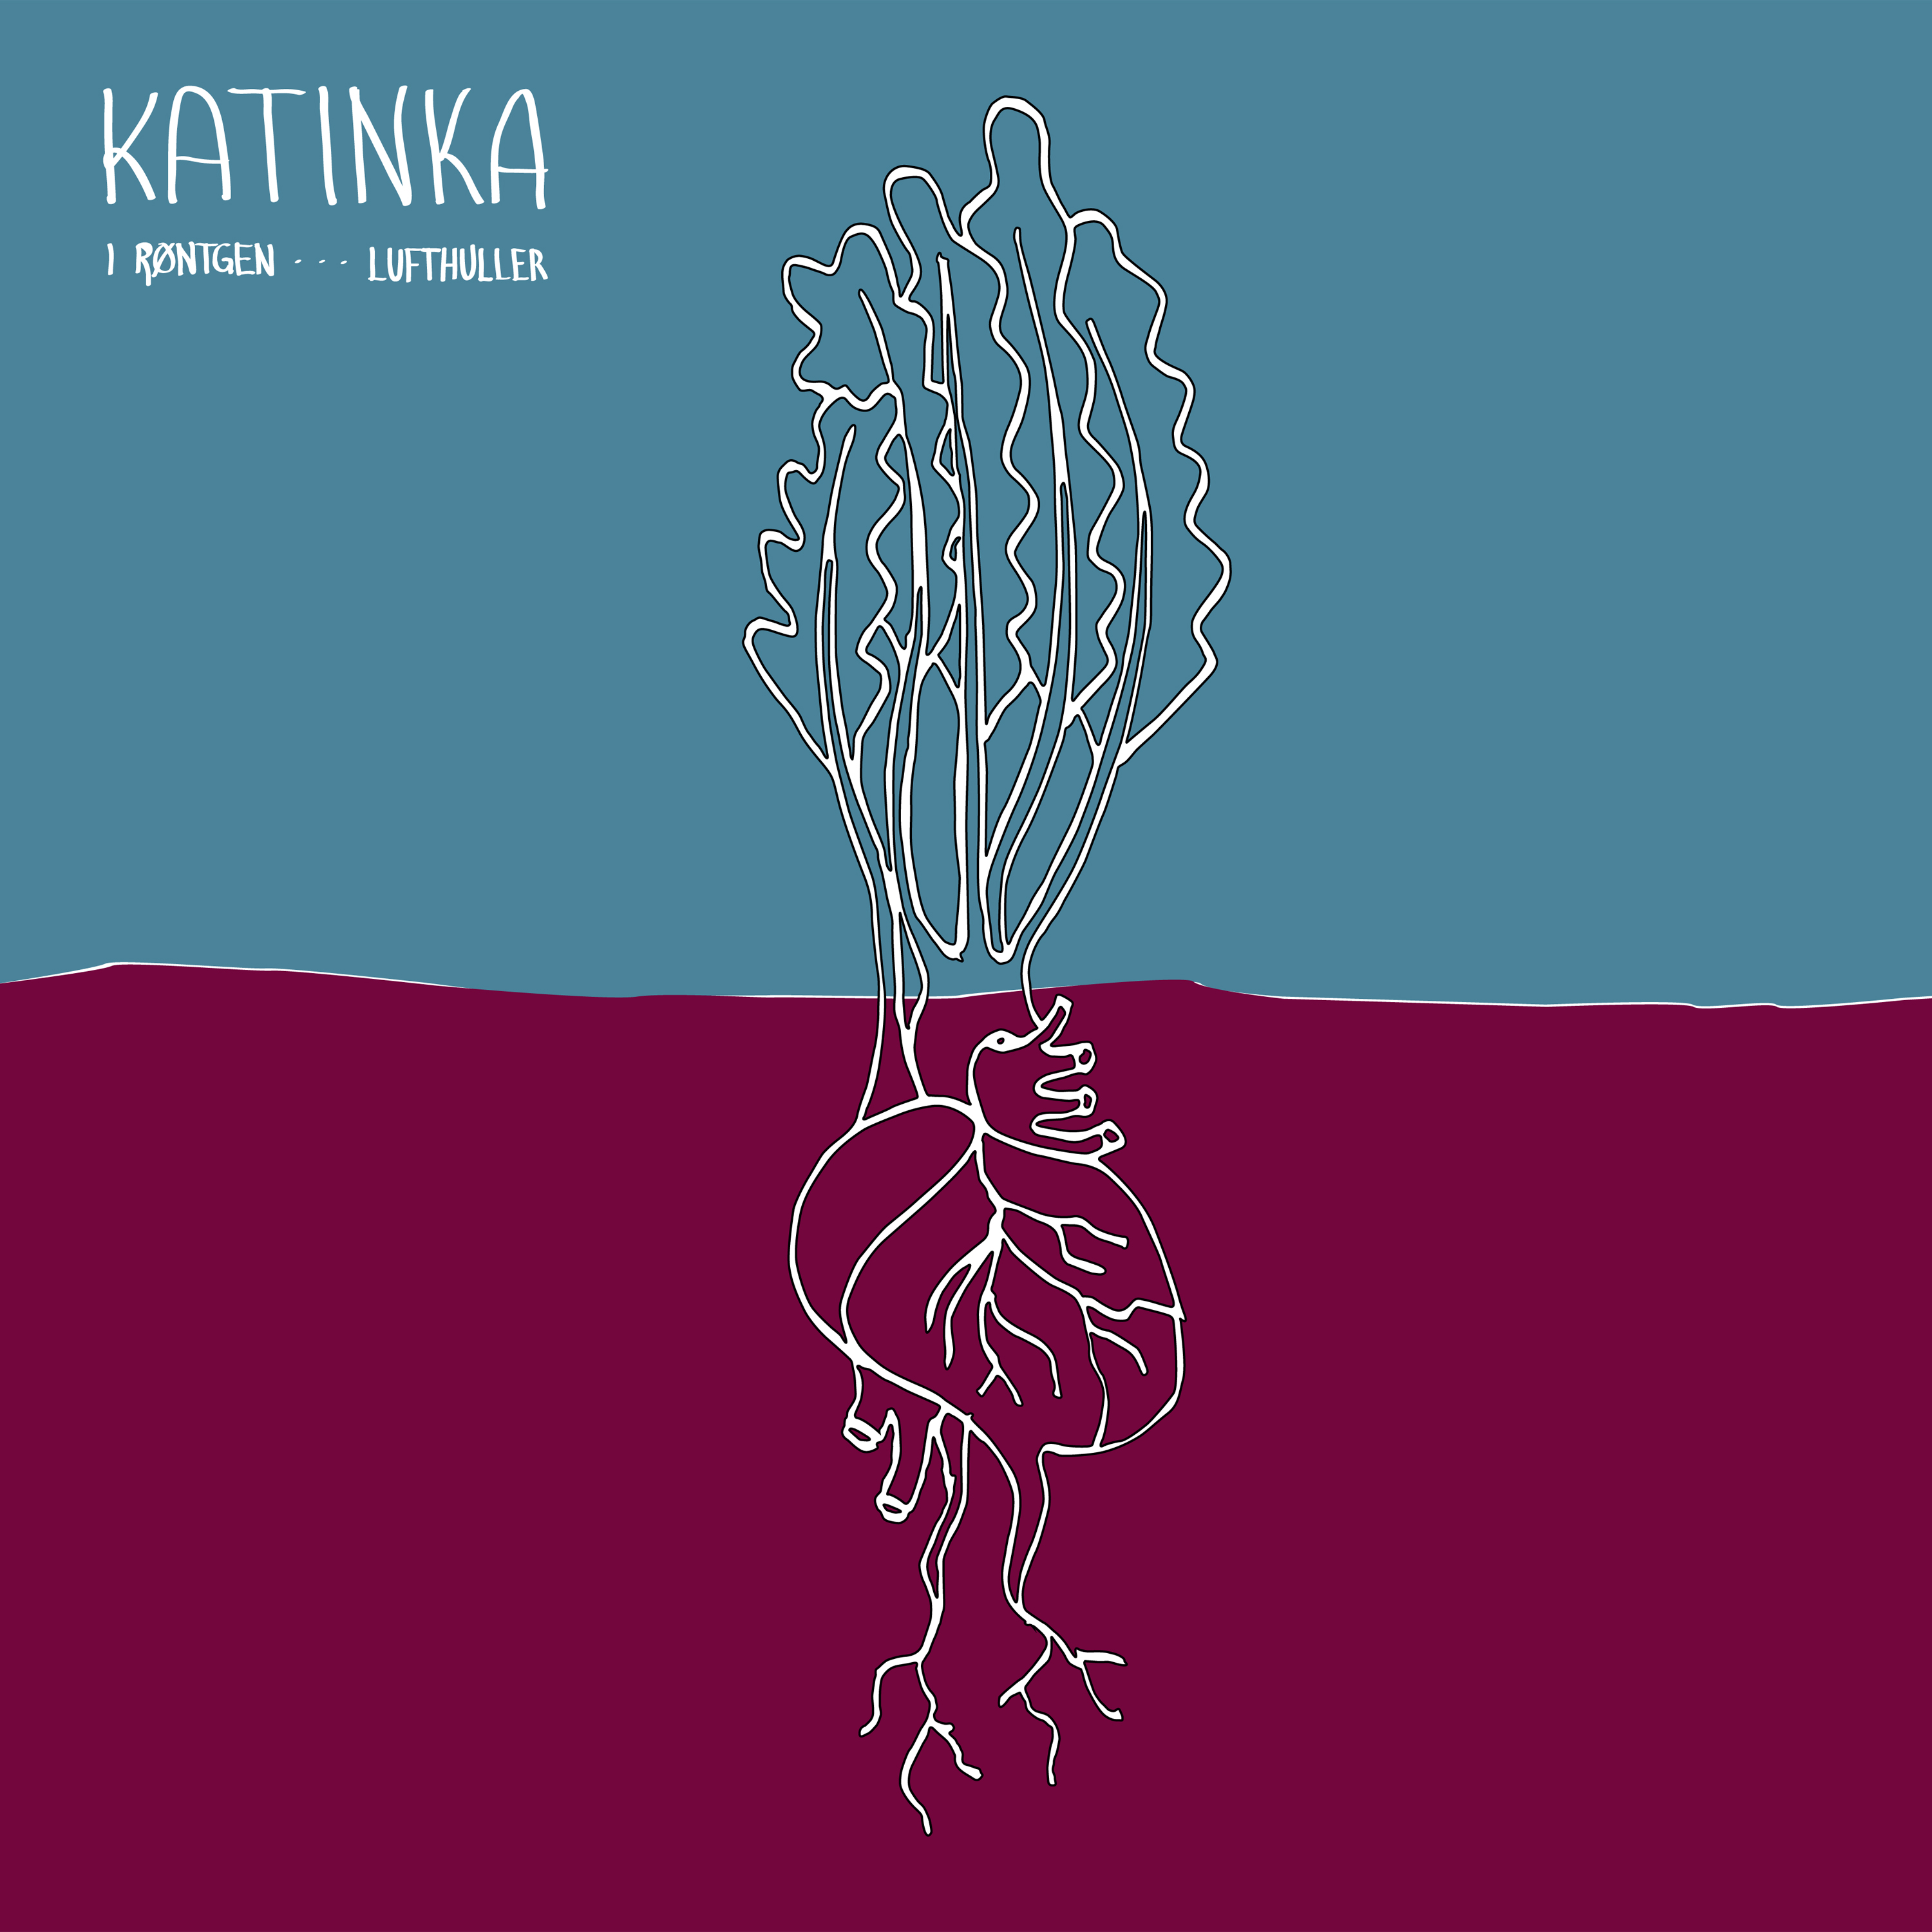 Katinka Band - I R ntgen / Lufthuller